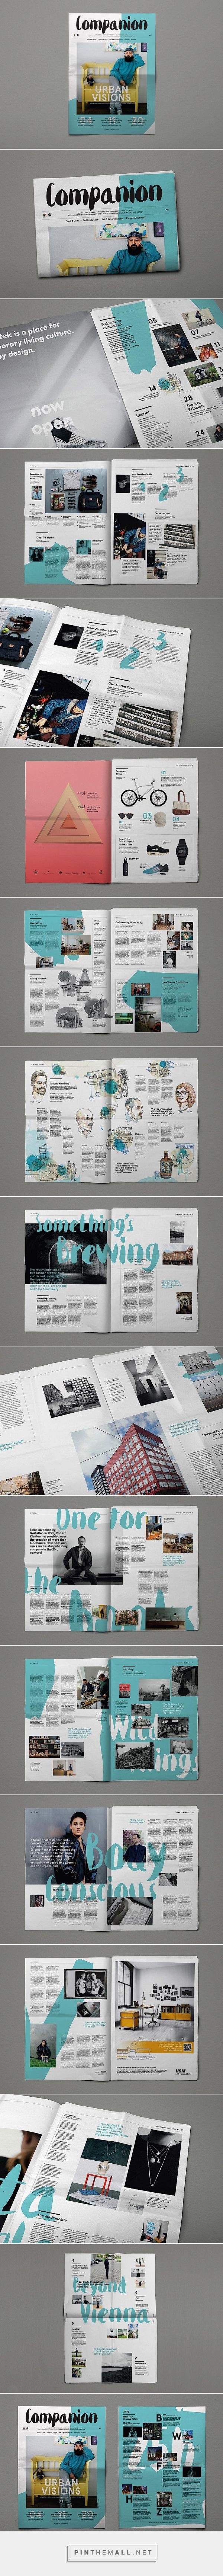 Editorial Design Inspiration: Companion Magazine |...